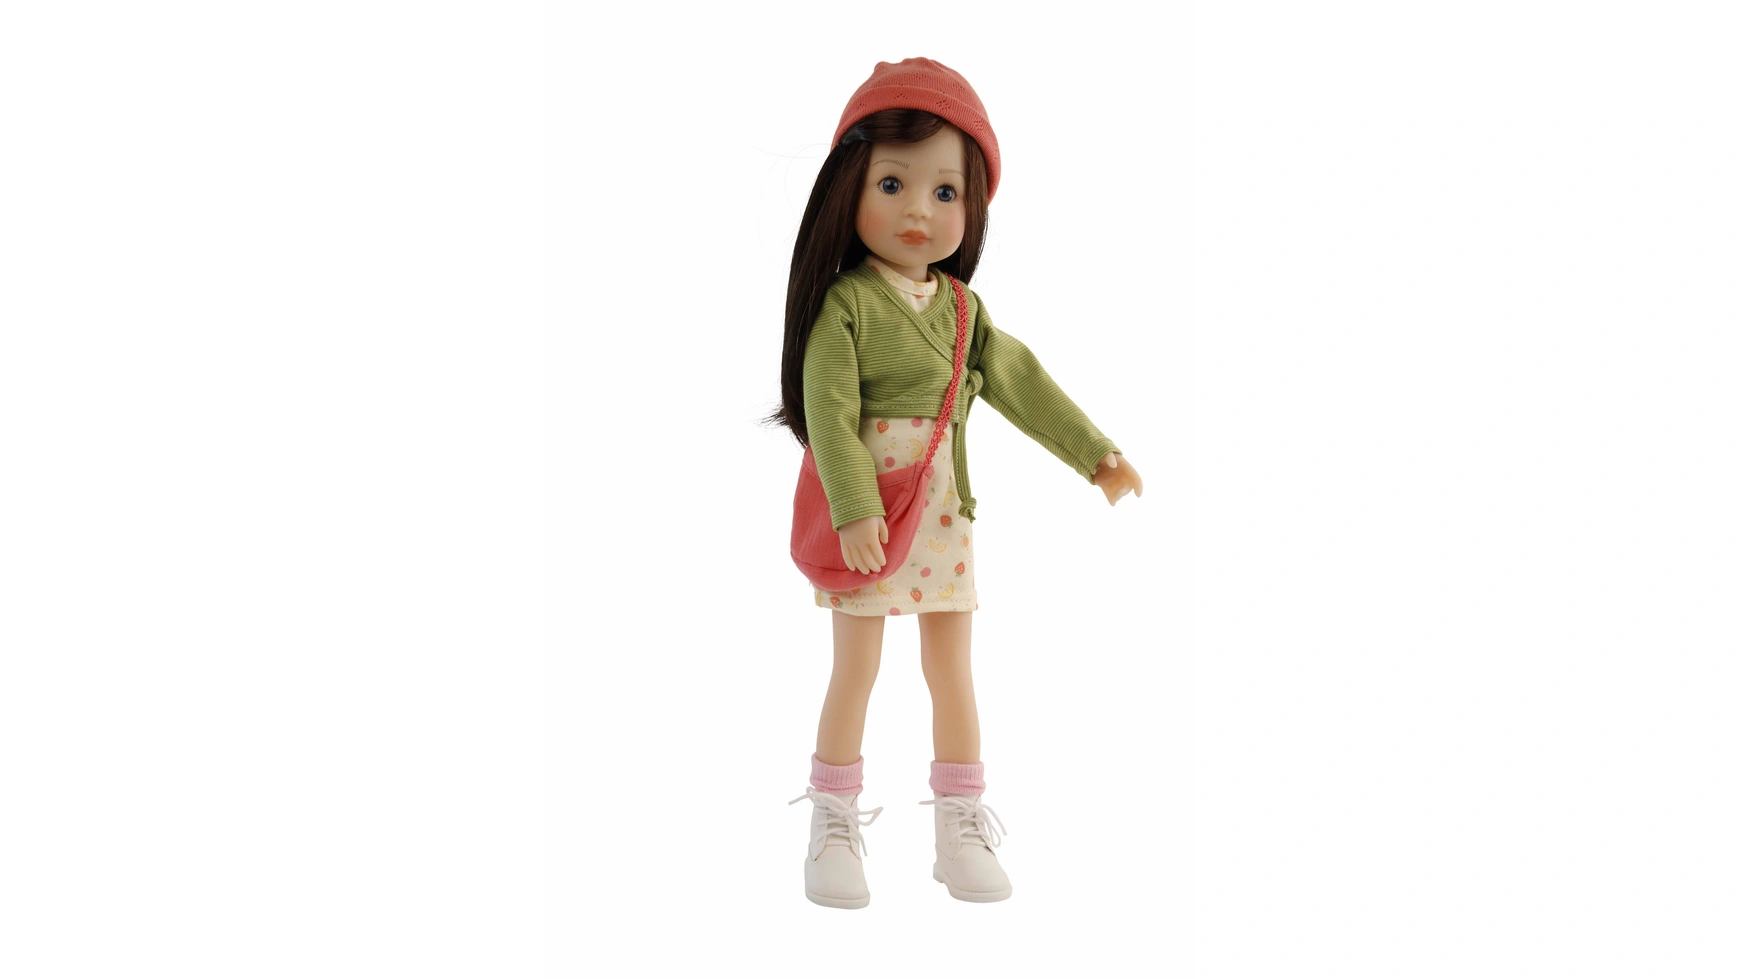 Schildkroet-Puppen Стоячая Кукла Йелла 46 см каштановые волосы, одежда желтая и зеленая/красная